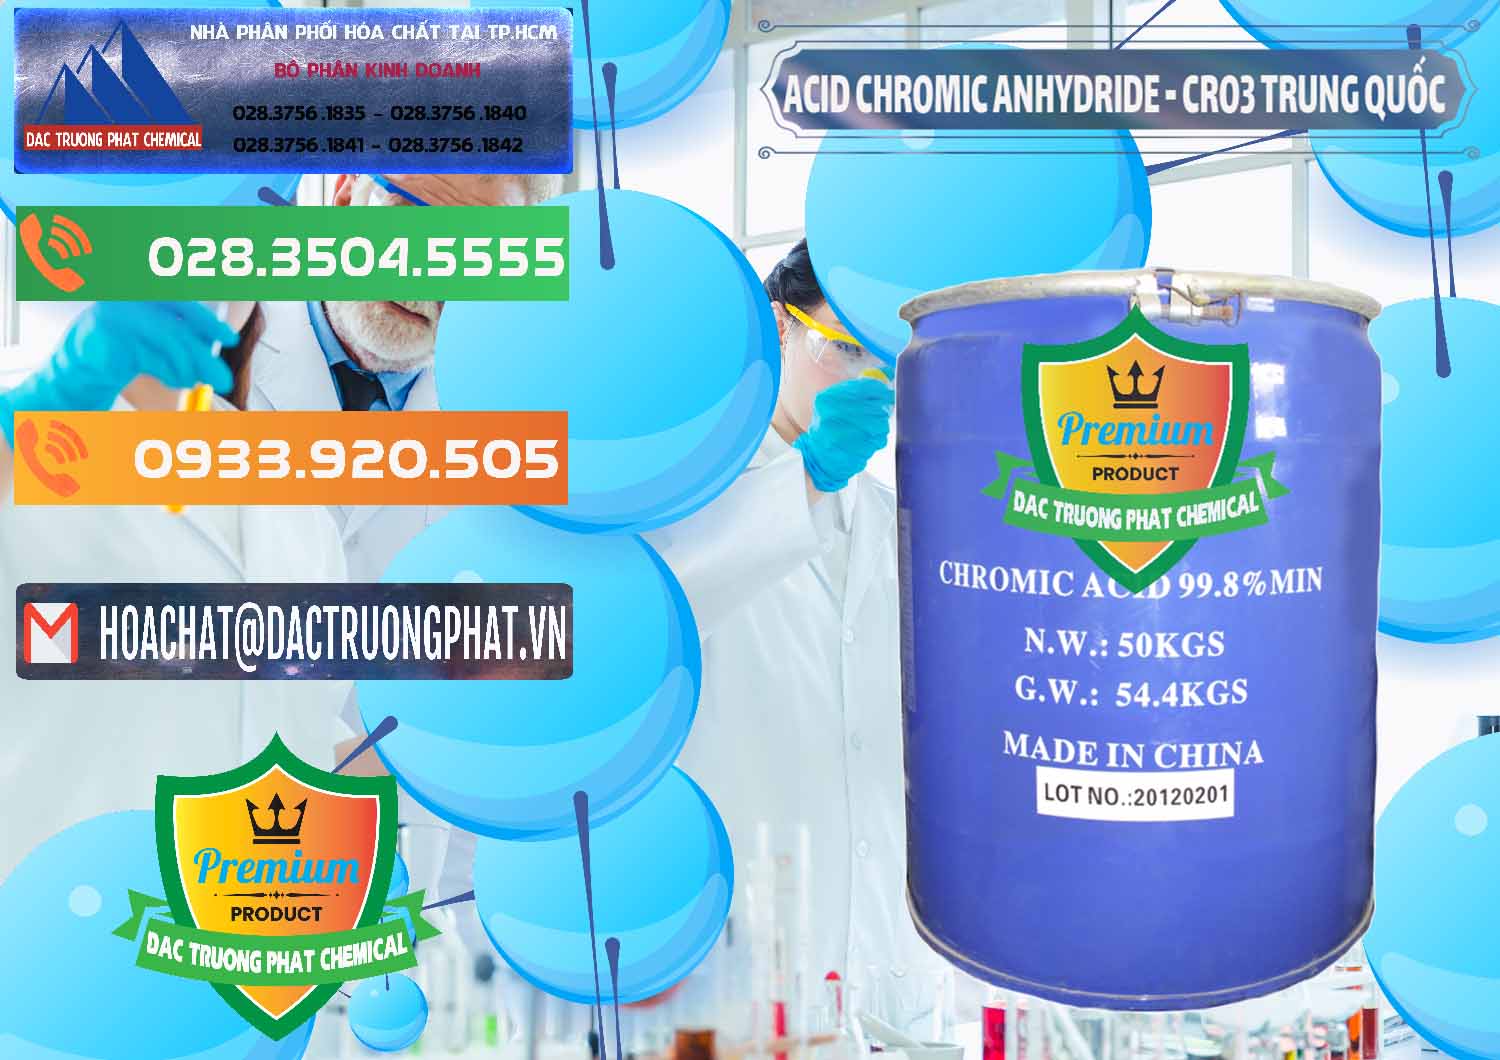 Chuyên bán và phân phối Acid Chromic Anhydride - Cromic CRO3 Trung Quốc China - 0007 - Đơn vị chuyên nhập khẩu _ cung cấp hóa chất tại TP.HCM - hoachatxulynuoc.com.vn